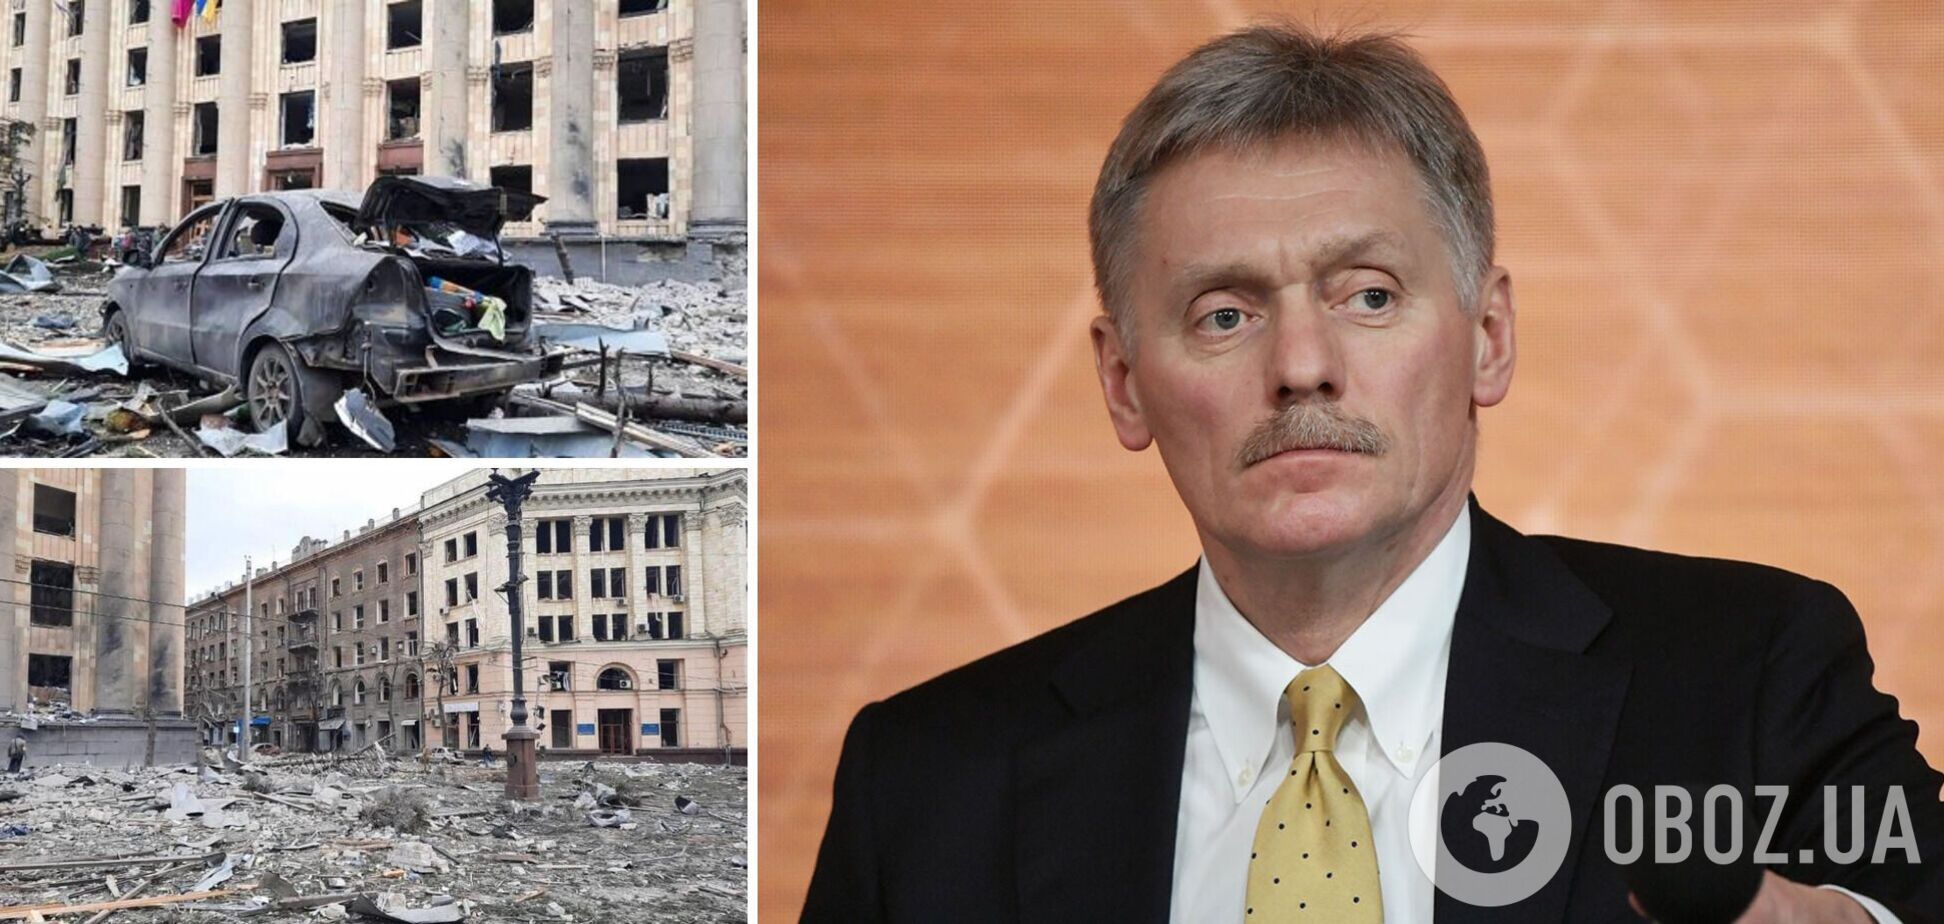 Пєсков заперечує причетність російських військ до загибелі мирного населення в Україні